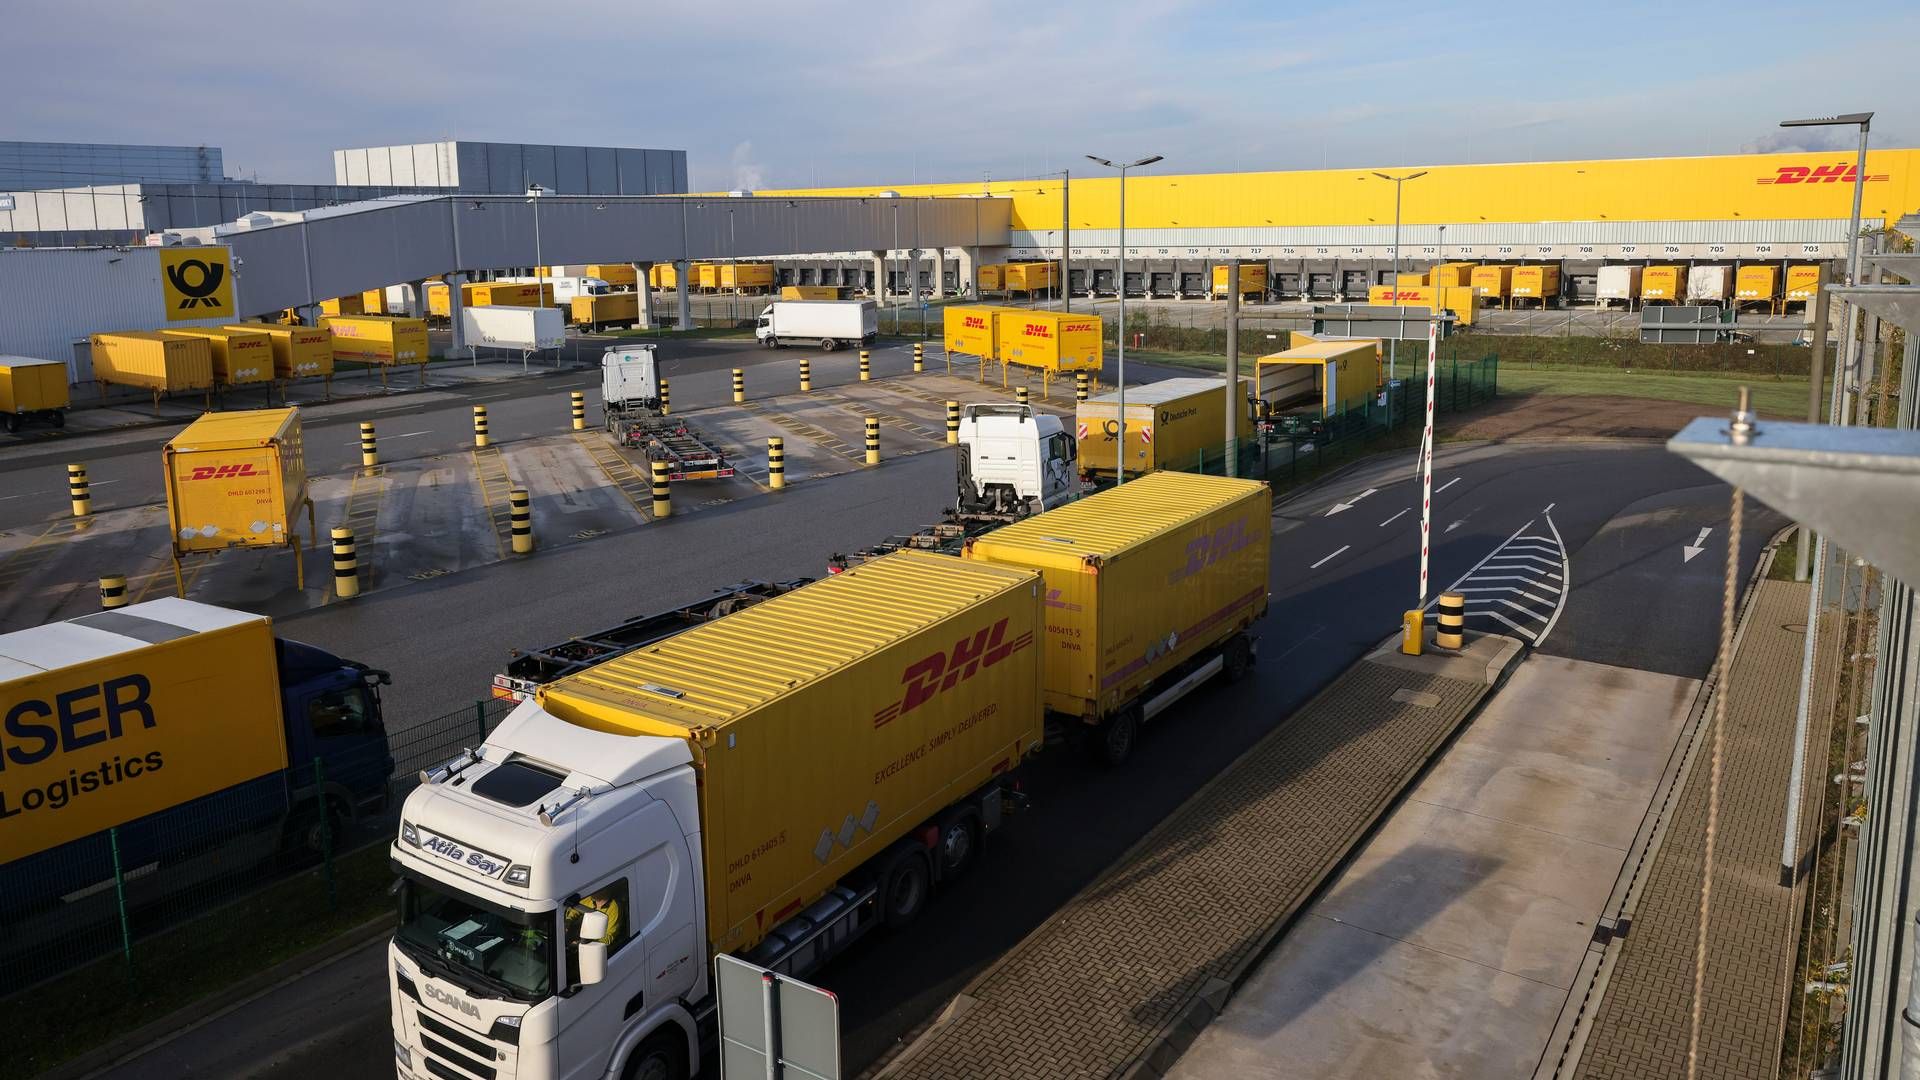 DHL fremæver også containerrederiernes reorganisering i deres alliancer, som et muligt forstyrringspunkt for forsyningskæderne. | Foto: Christian Charisius/AP/Ritzau Scanpix